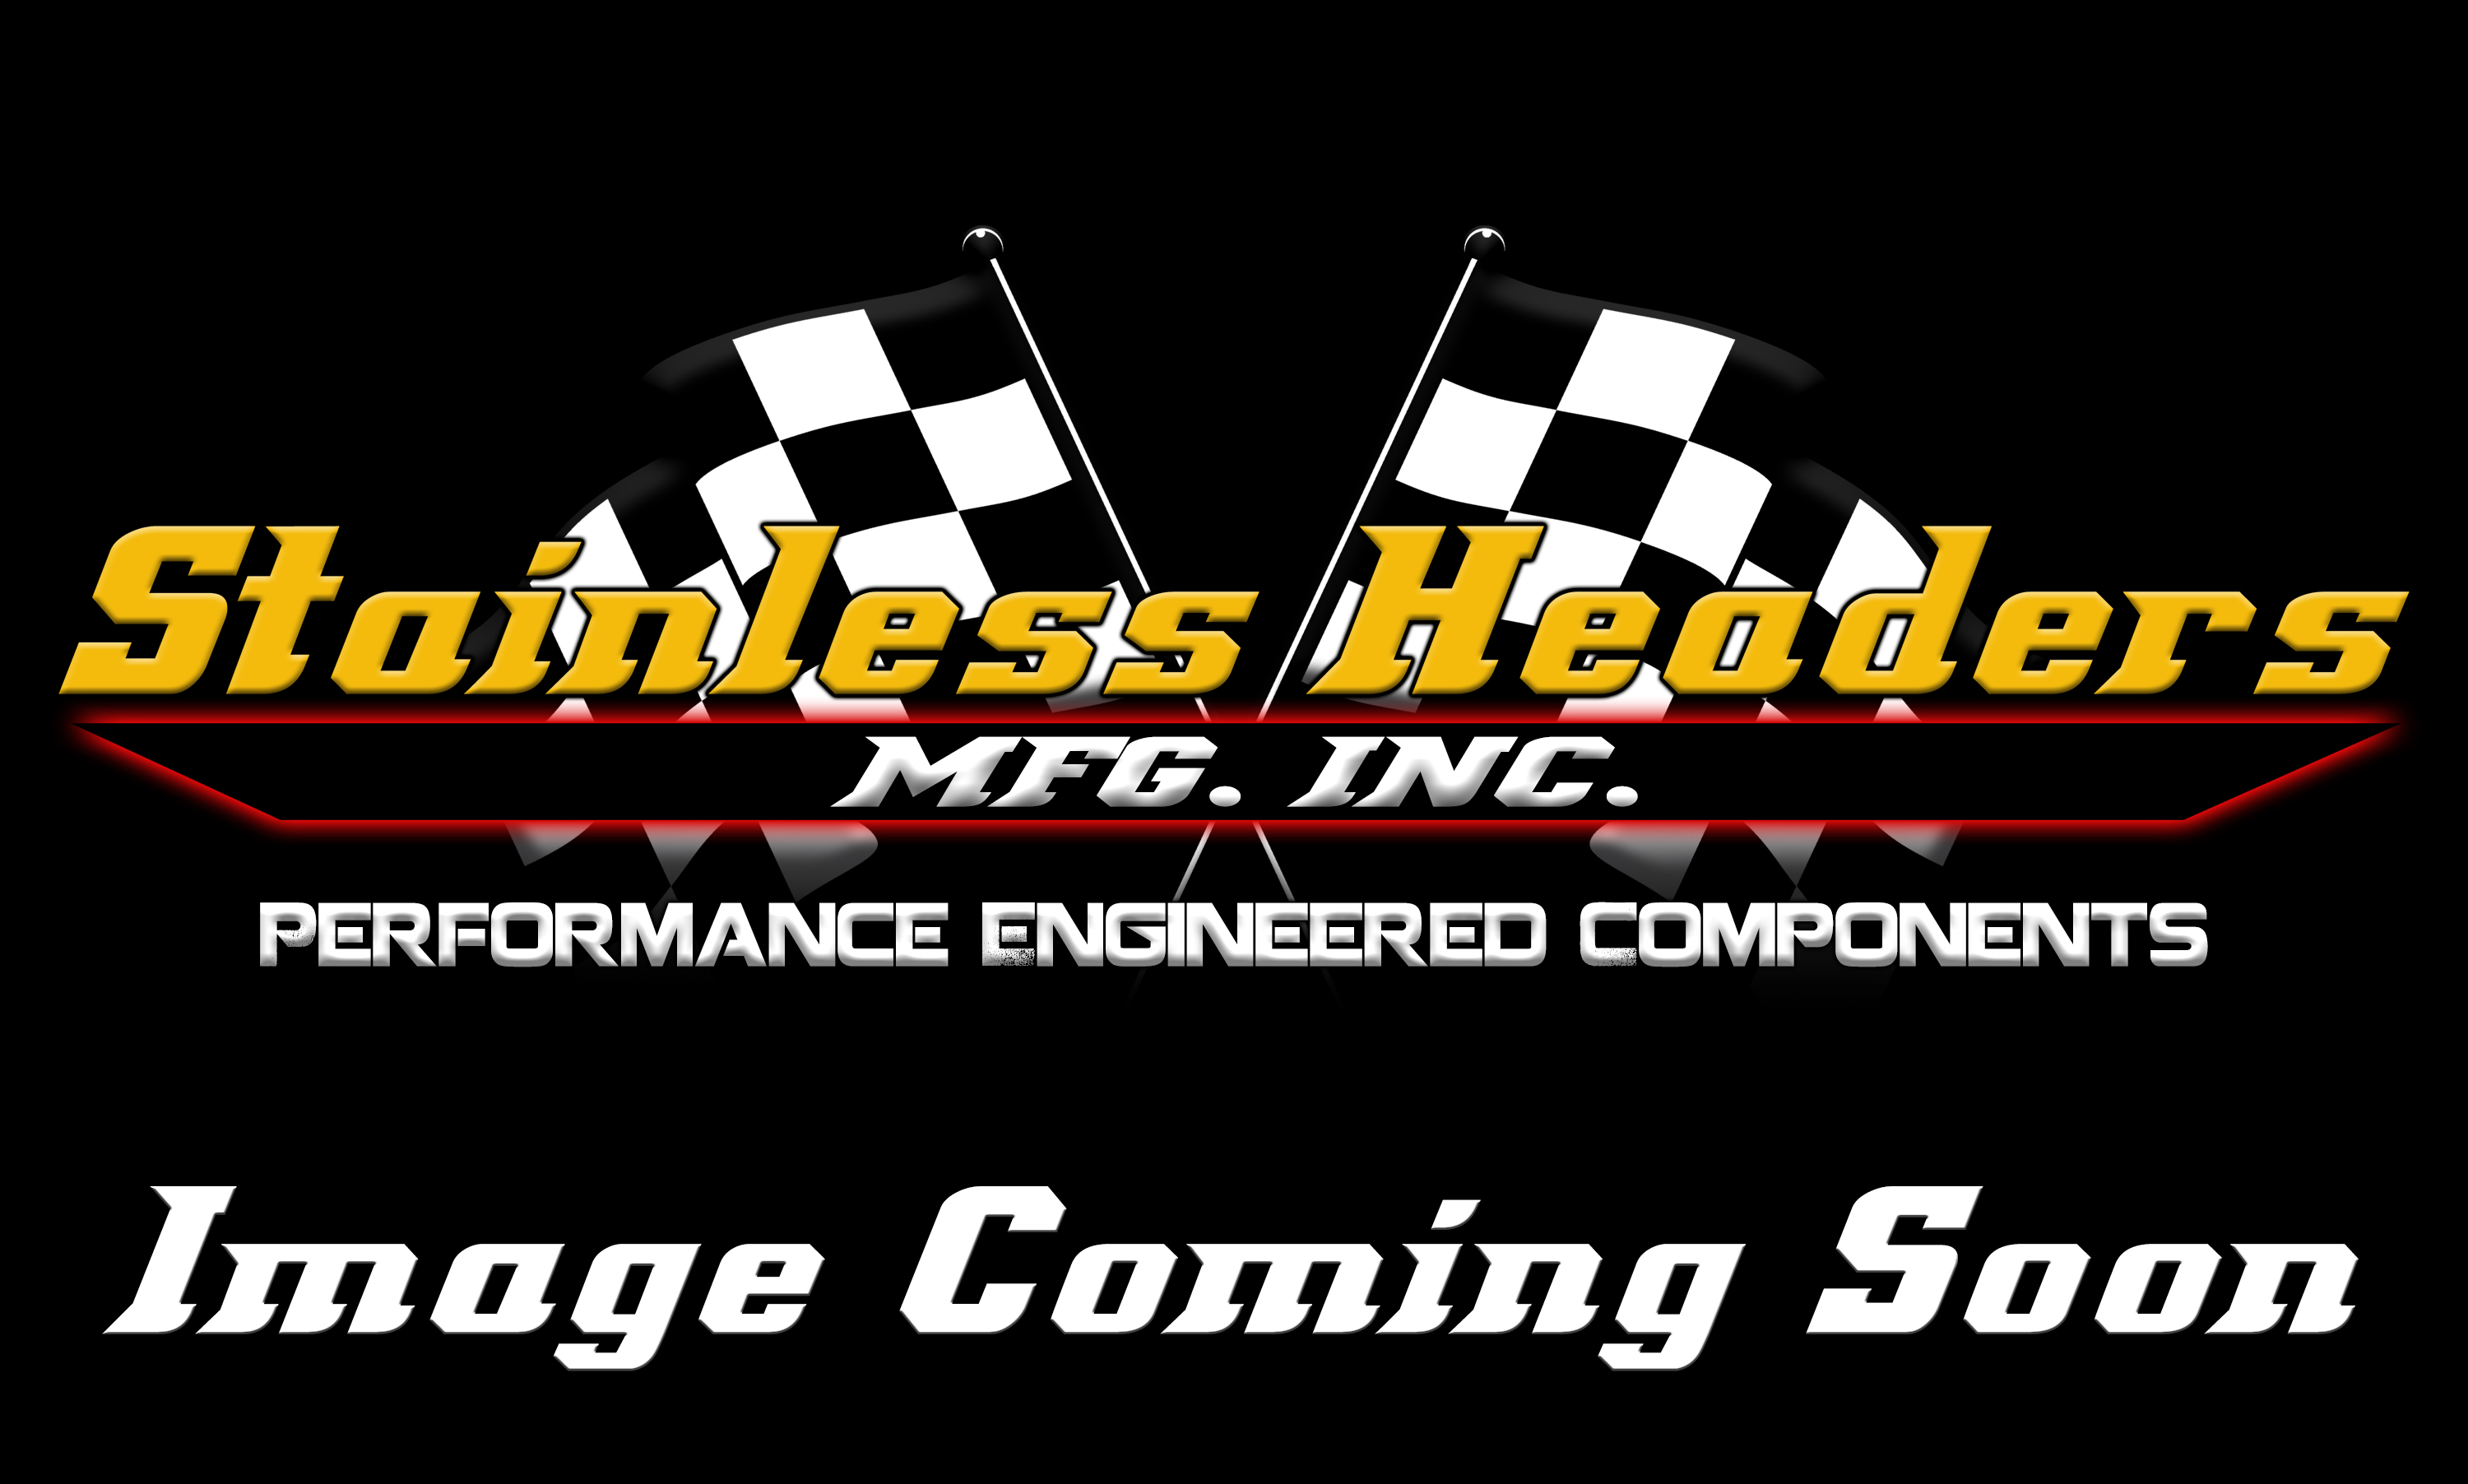 Stainless Headers - Lightweight Aluminum Racemuffler: 2 1/2" x 8"